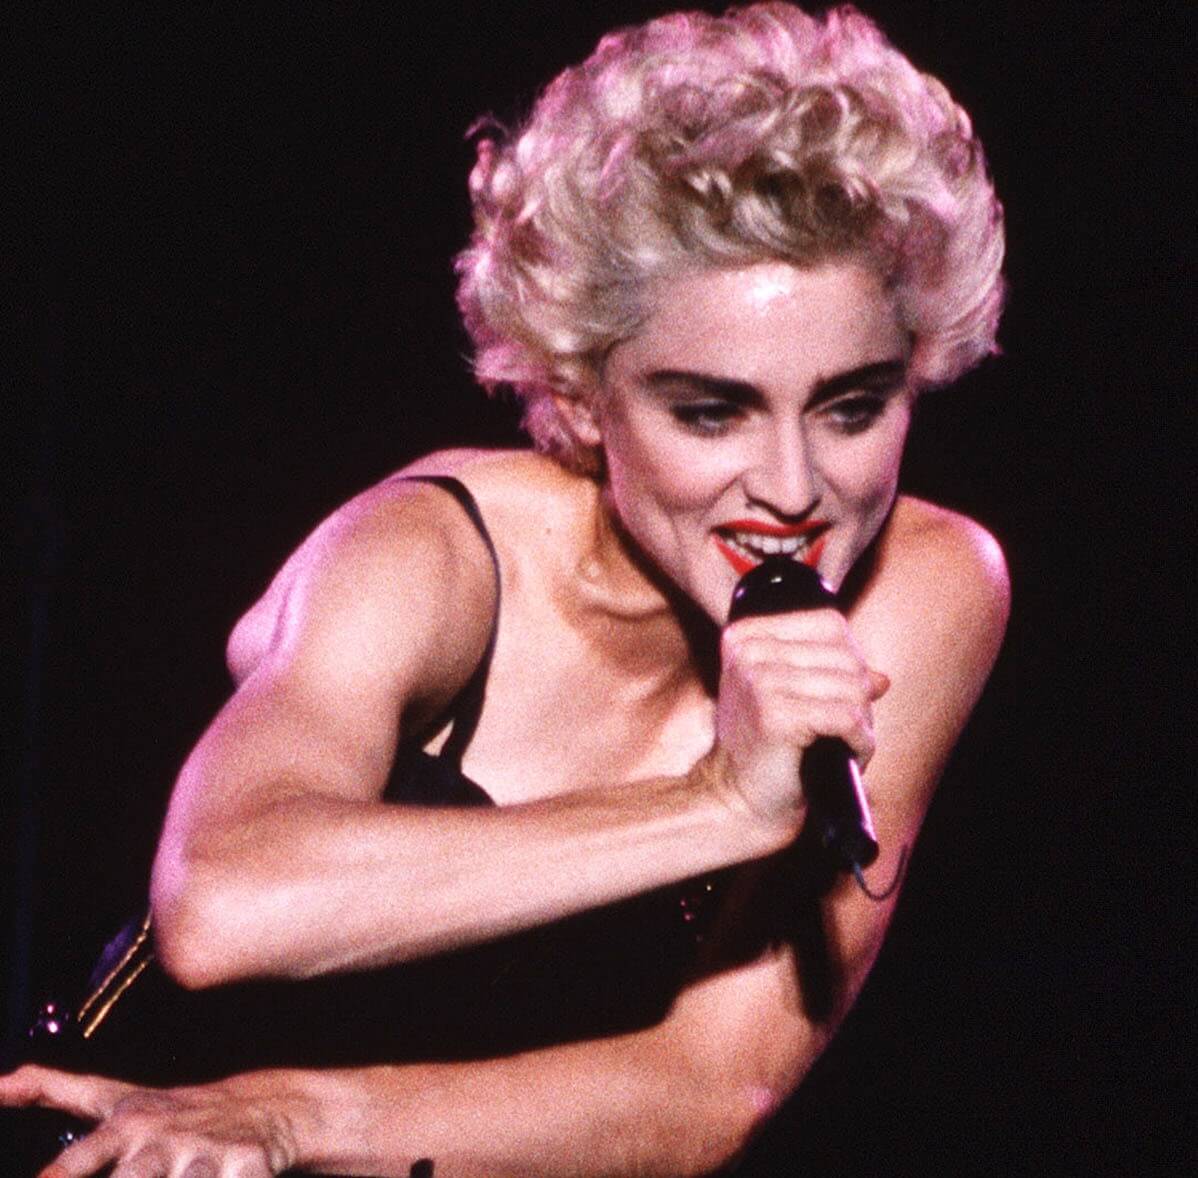 Madonna wearing black